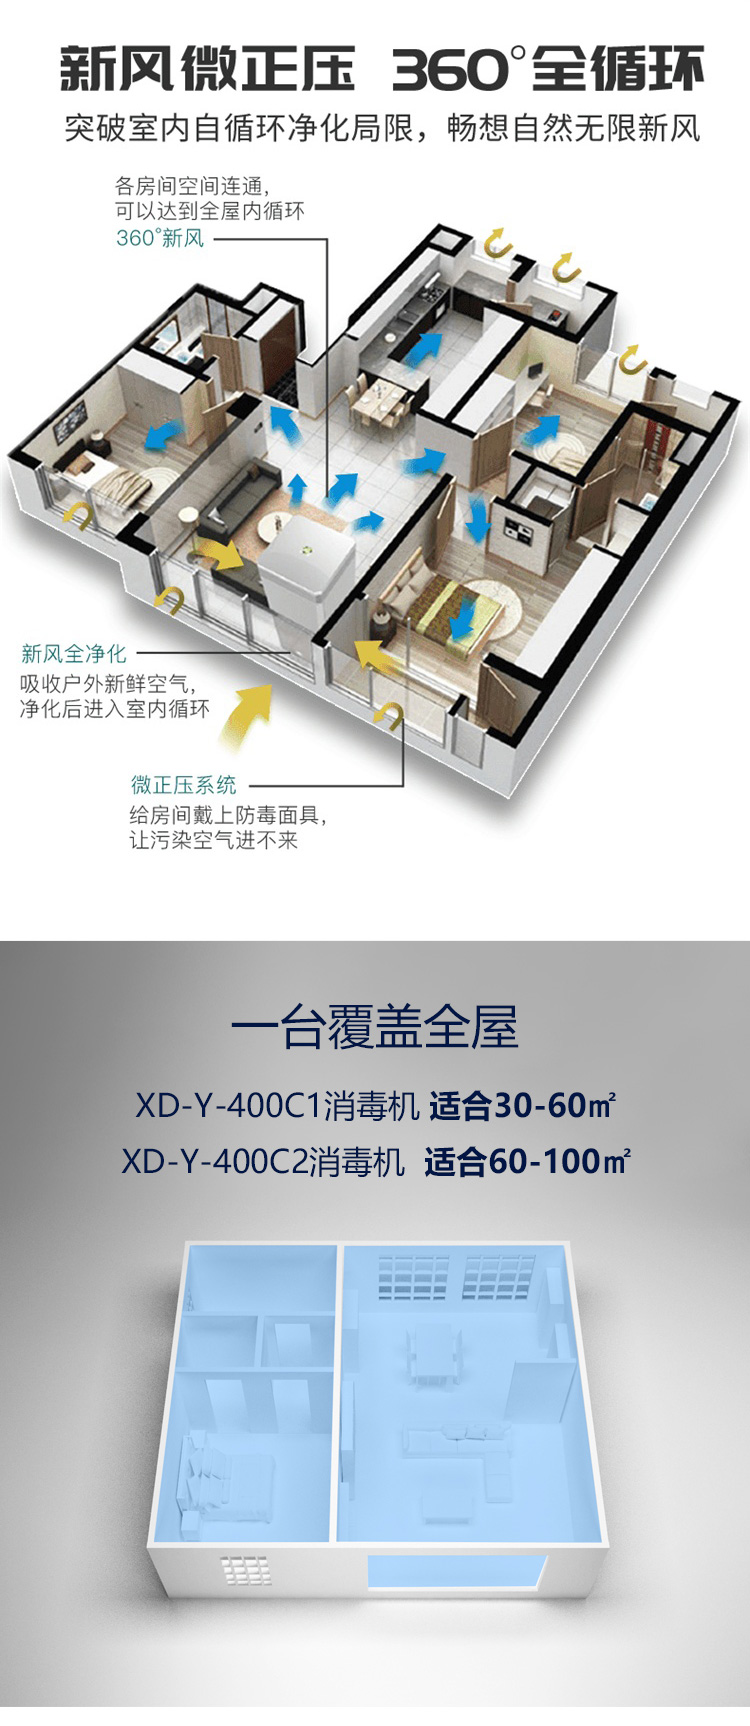 新风臭氧空气消毒机XD-Y-400C2【10g】60-100平米